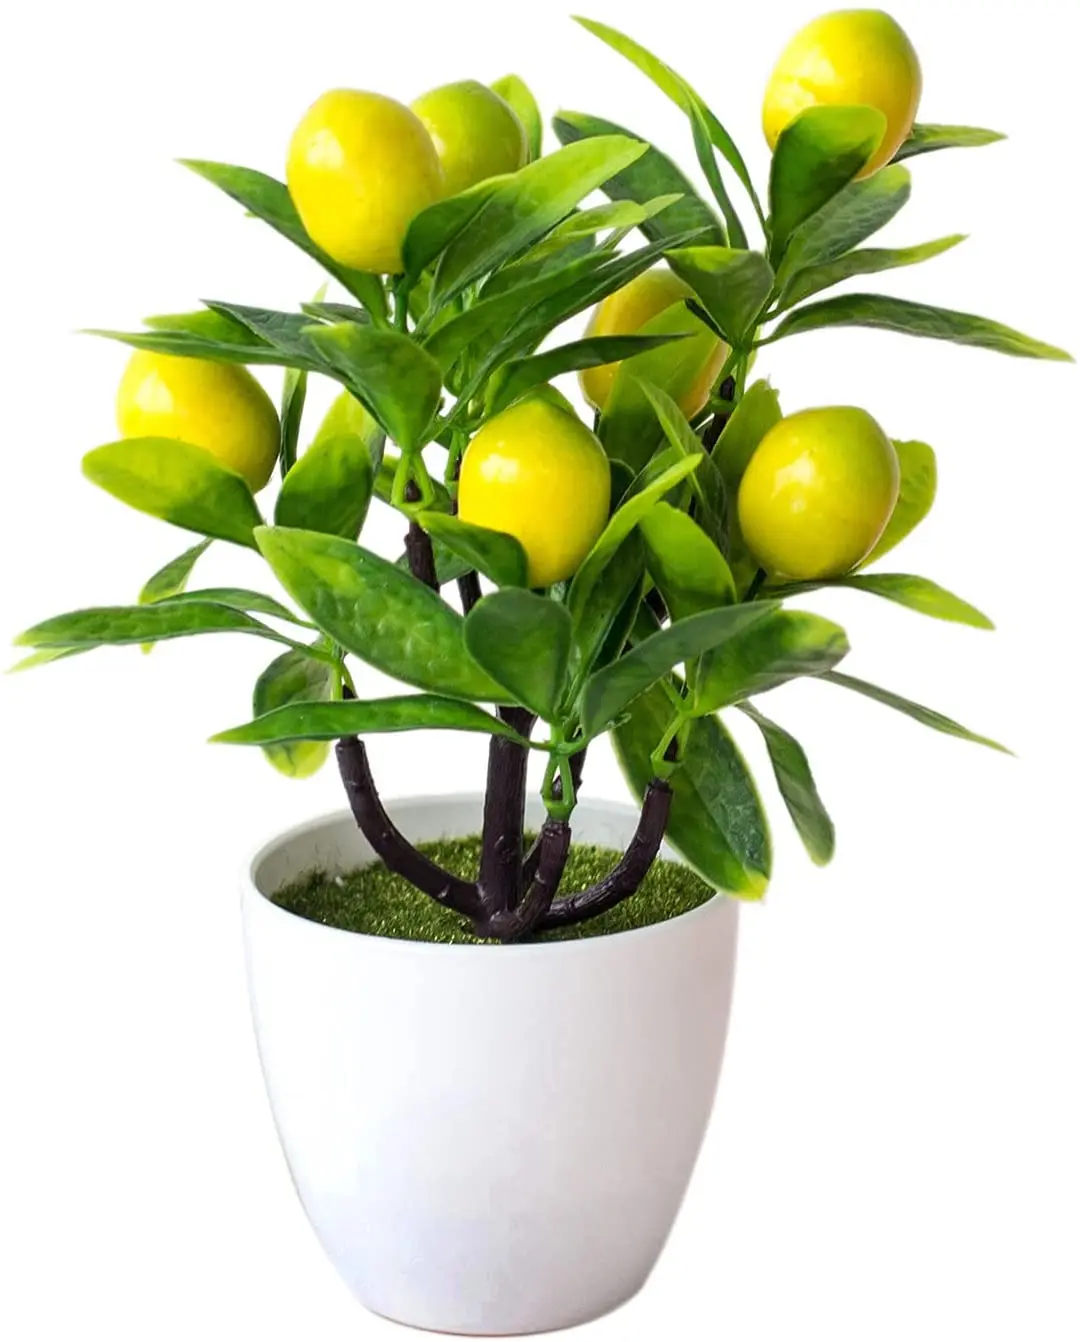 

Home Garden Decor Faux Mini Potted Plastic Fruit Plant Artificial Lemon Bonsai Plant Tree, Shown